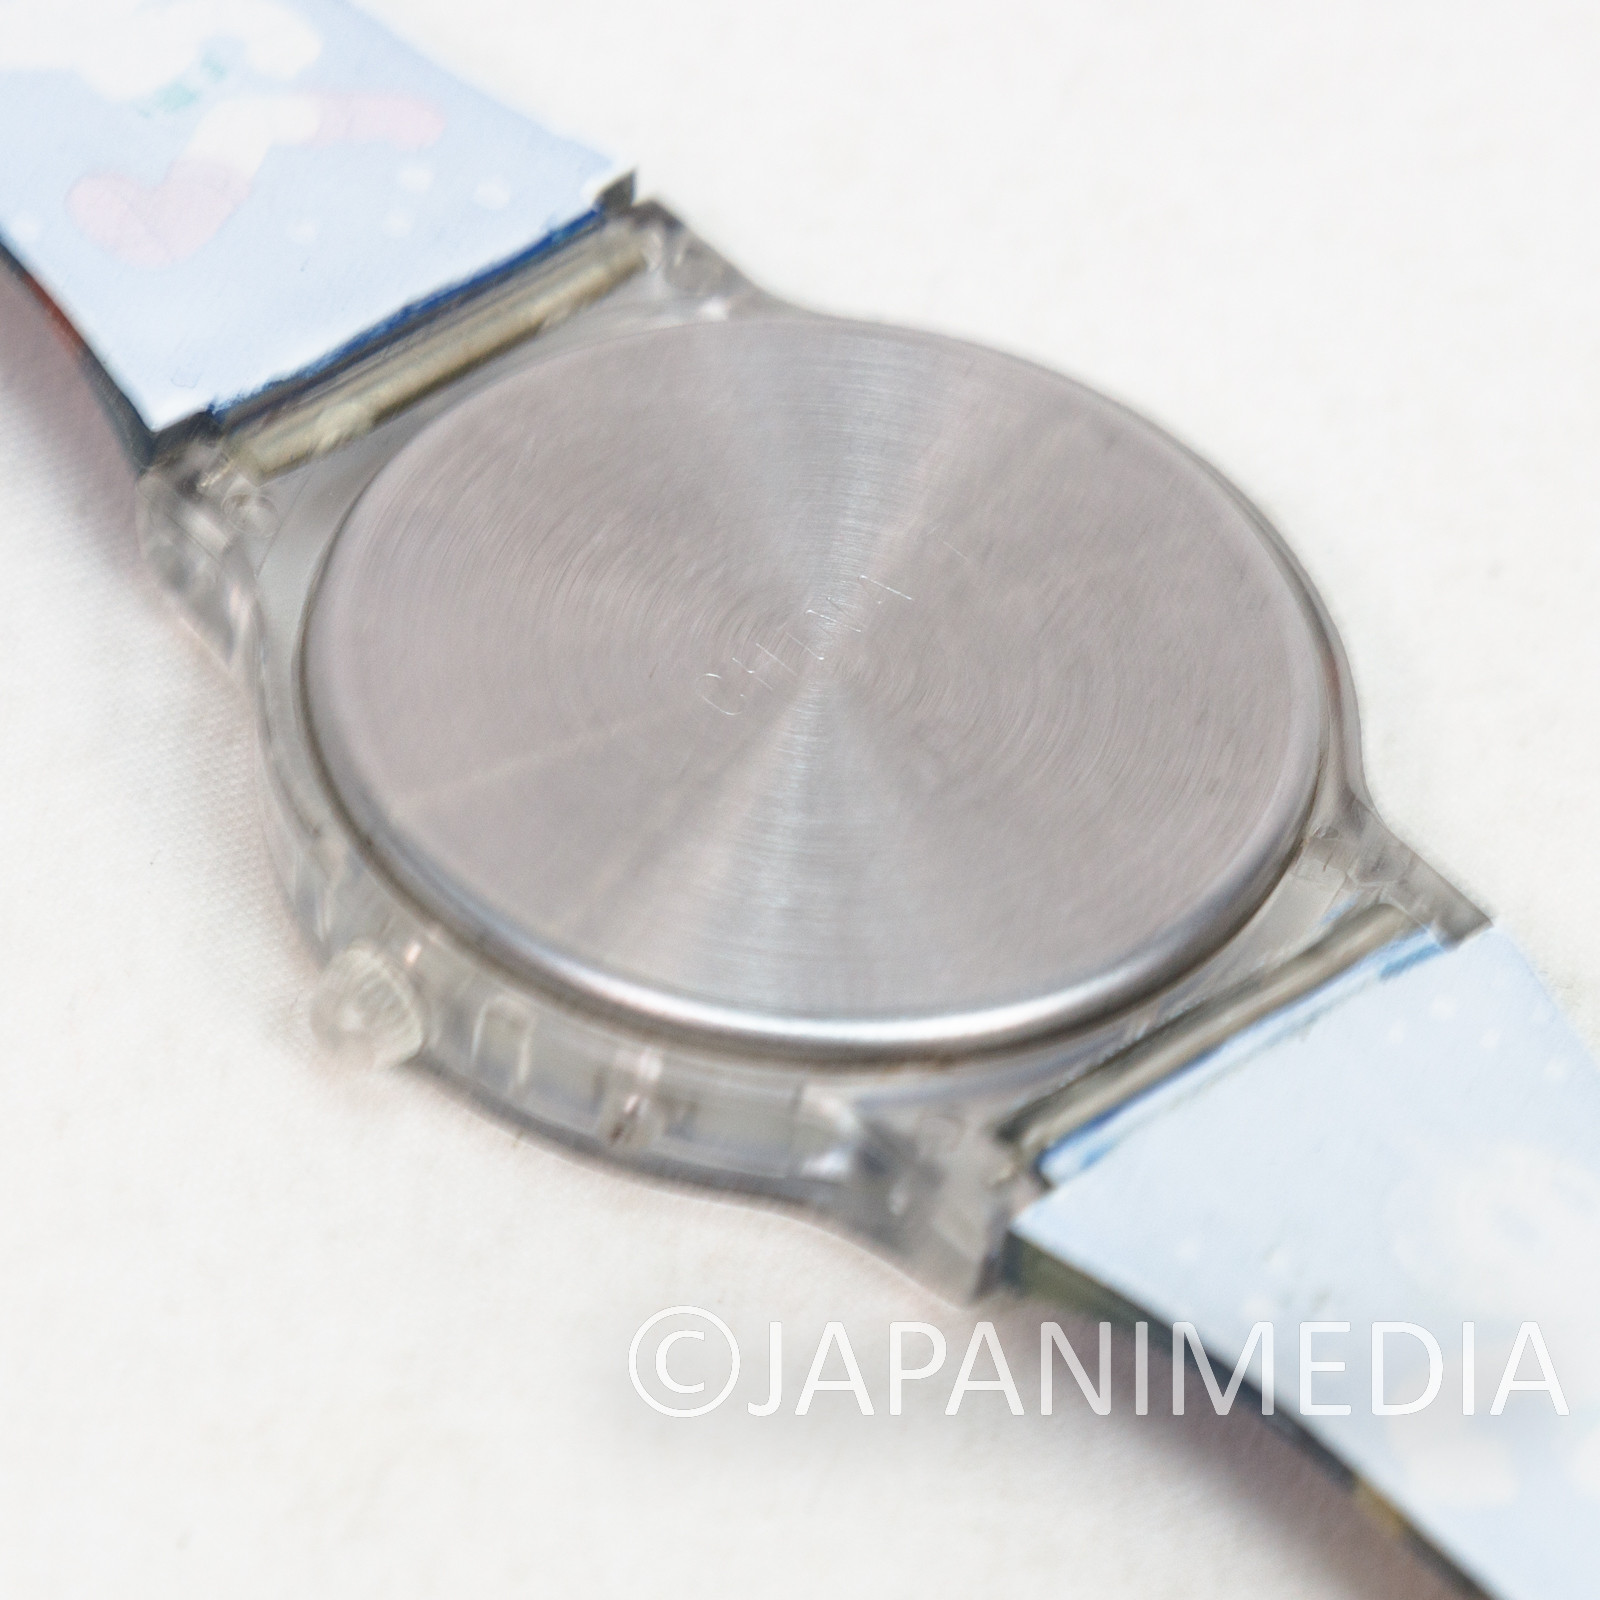 Retro Astro Boy Atom Digital Wrist Watch / Osamu Tezuka